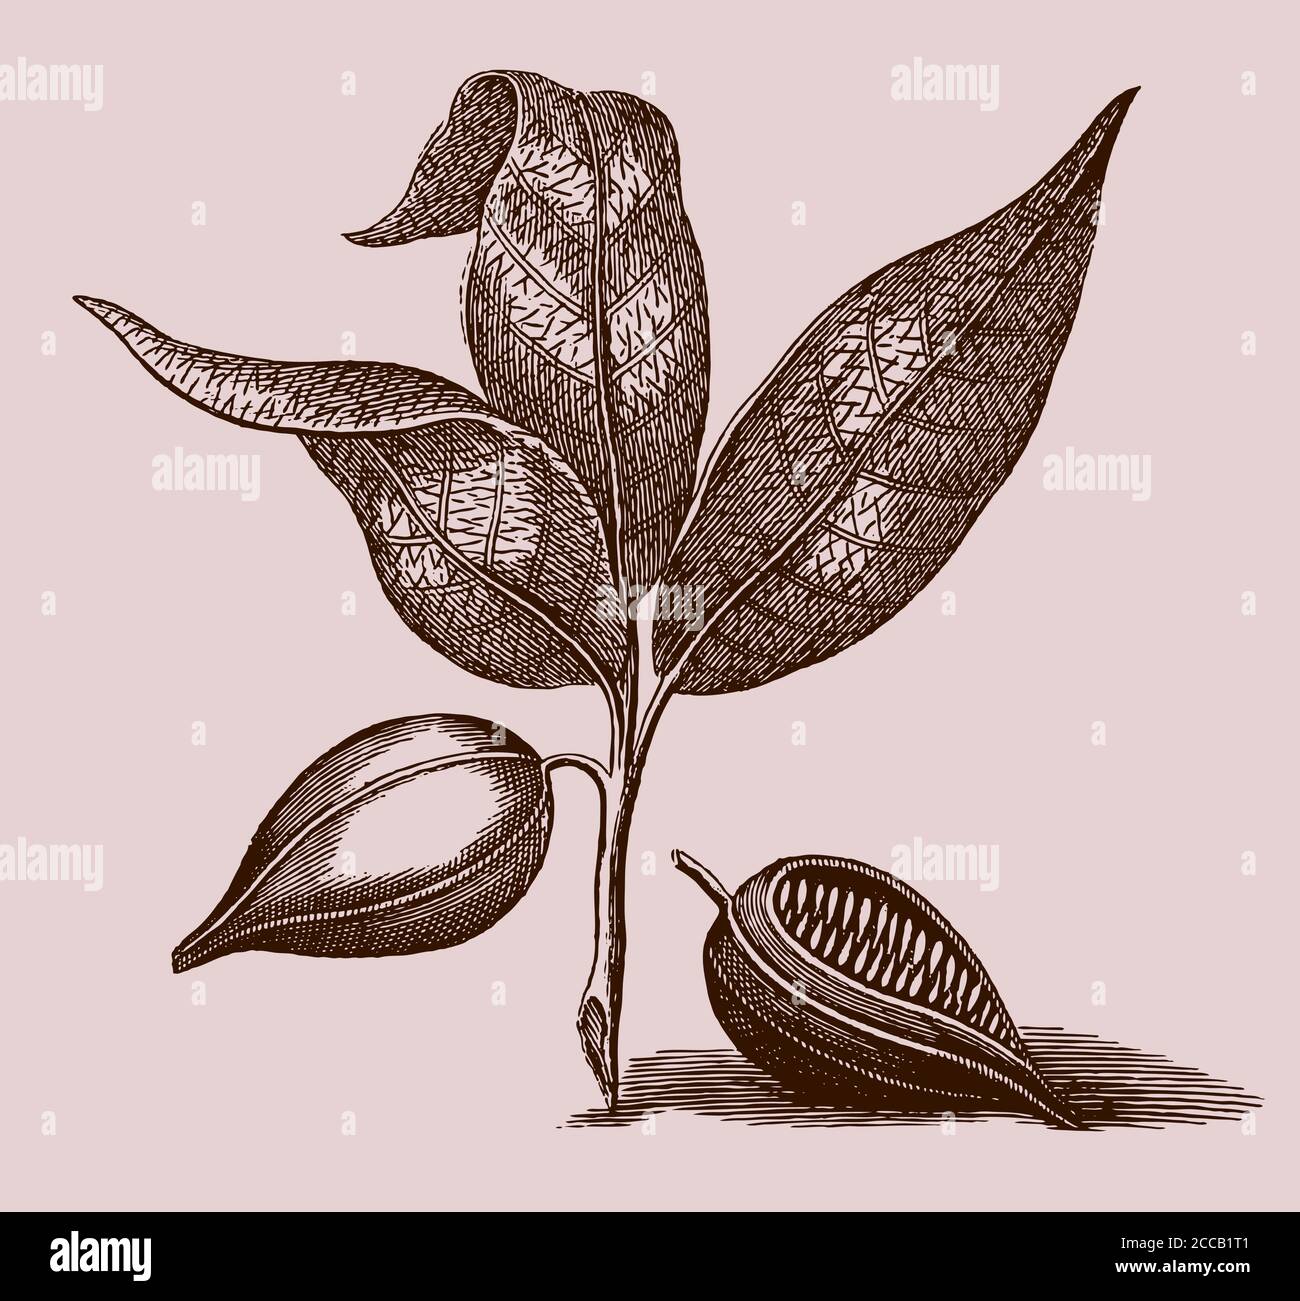 Branche avec des feuilles et des fruits de l'arbre de cacao, theobroma cacao s'est isolé sur fond marron, après une gravure du XVIIIe siècle Illustration de Vecteur